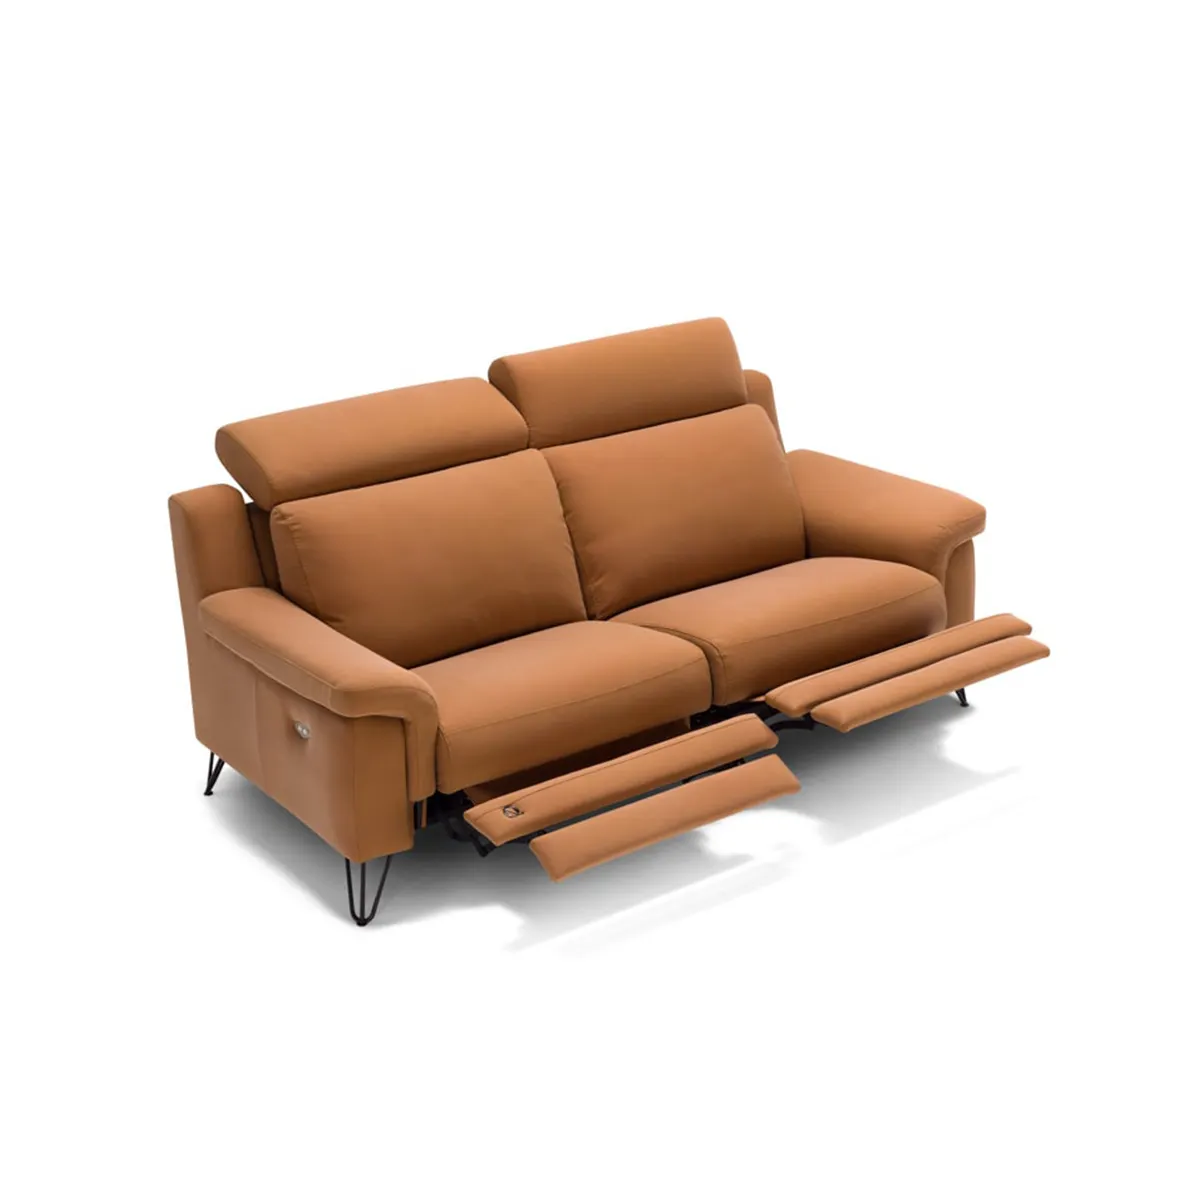 Лучшее итальянское качество, 3-местный диван с 2 откидными креселами, модель, сочетающий комфорт, роскошь и инновационный дизайн для вашего отдыха